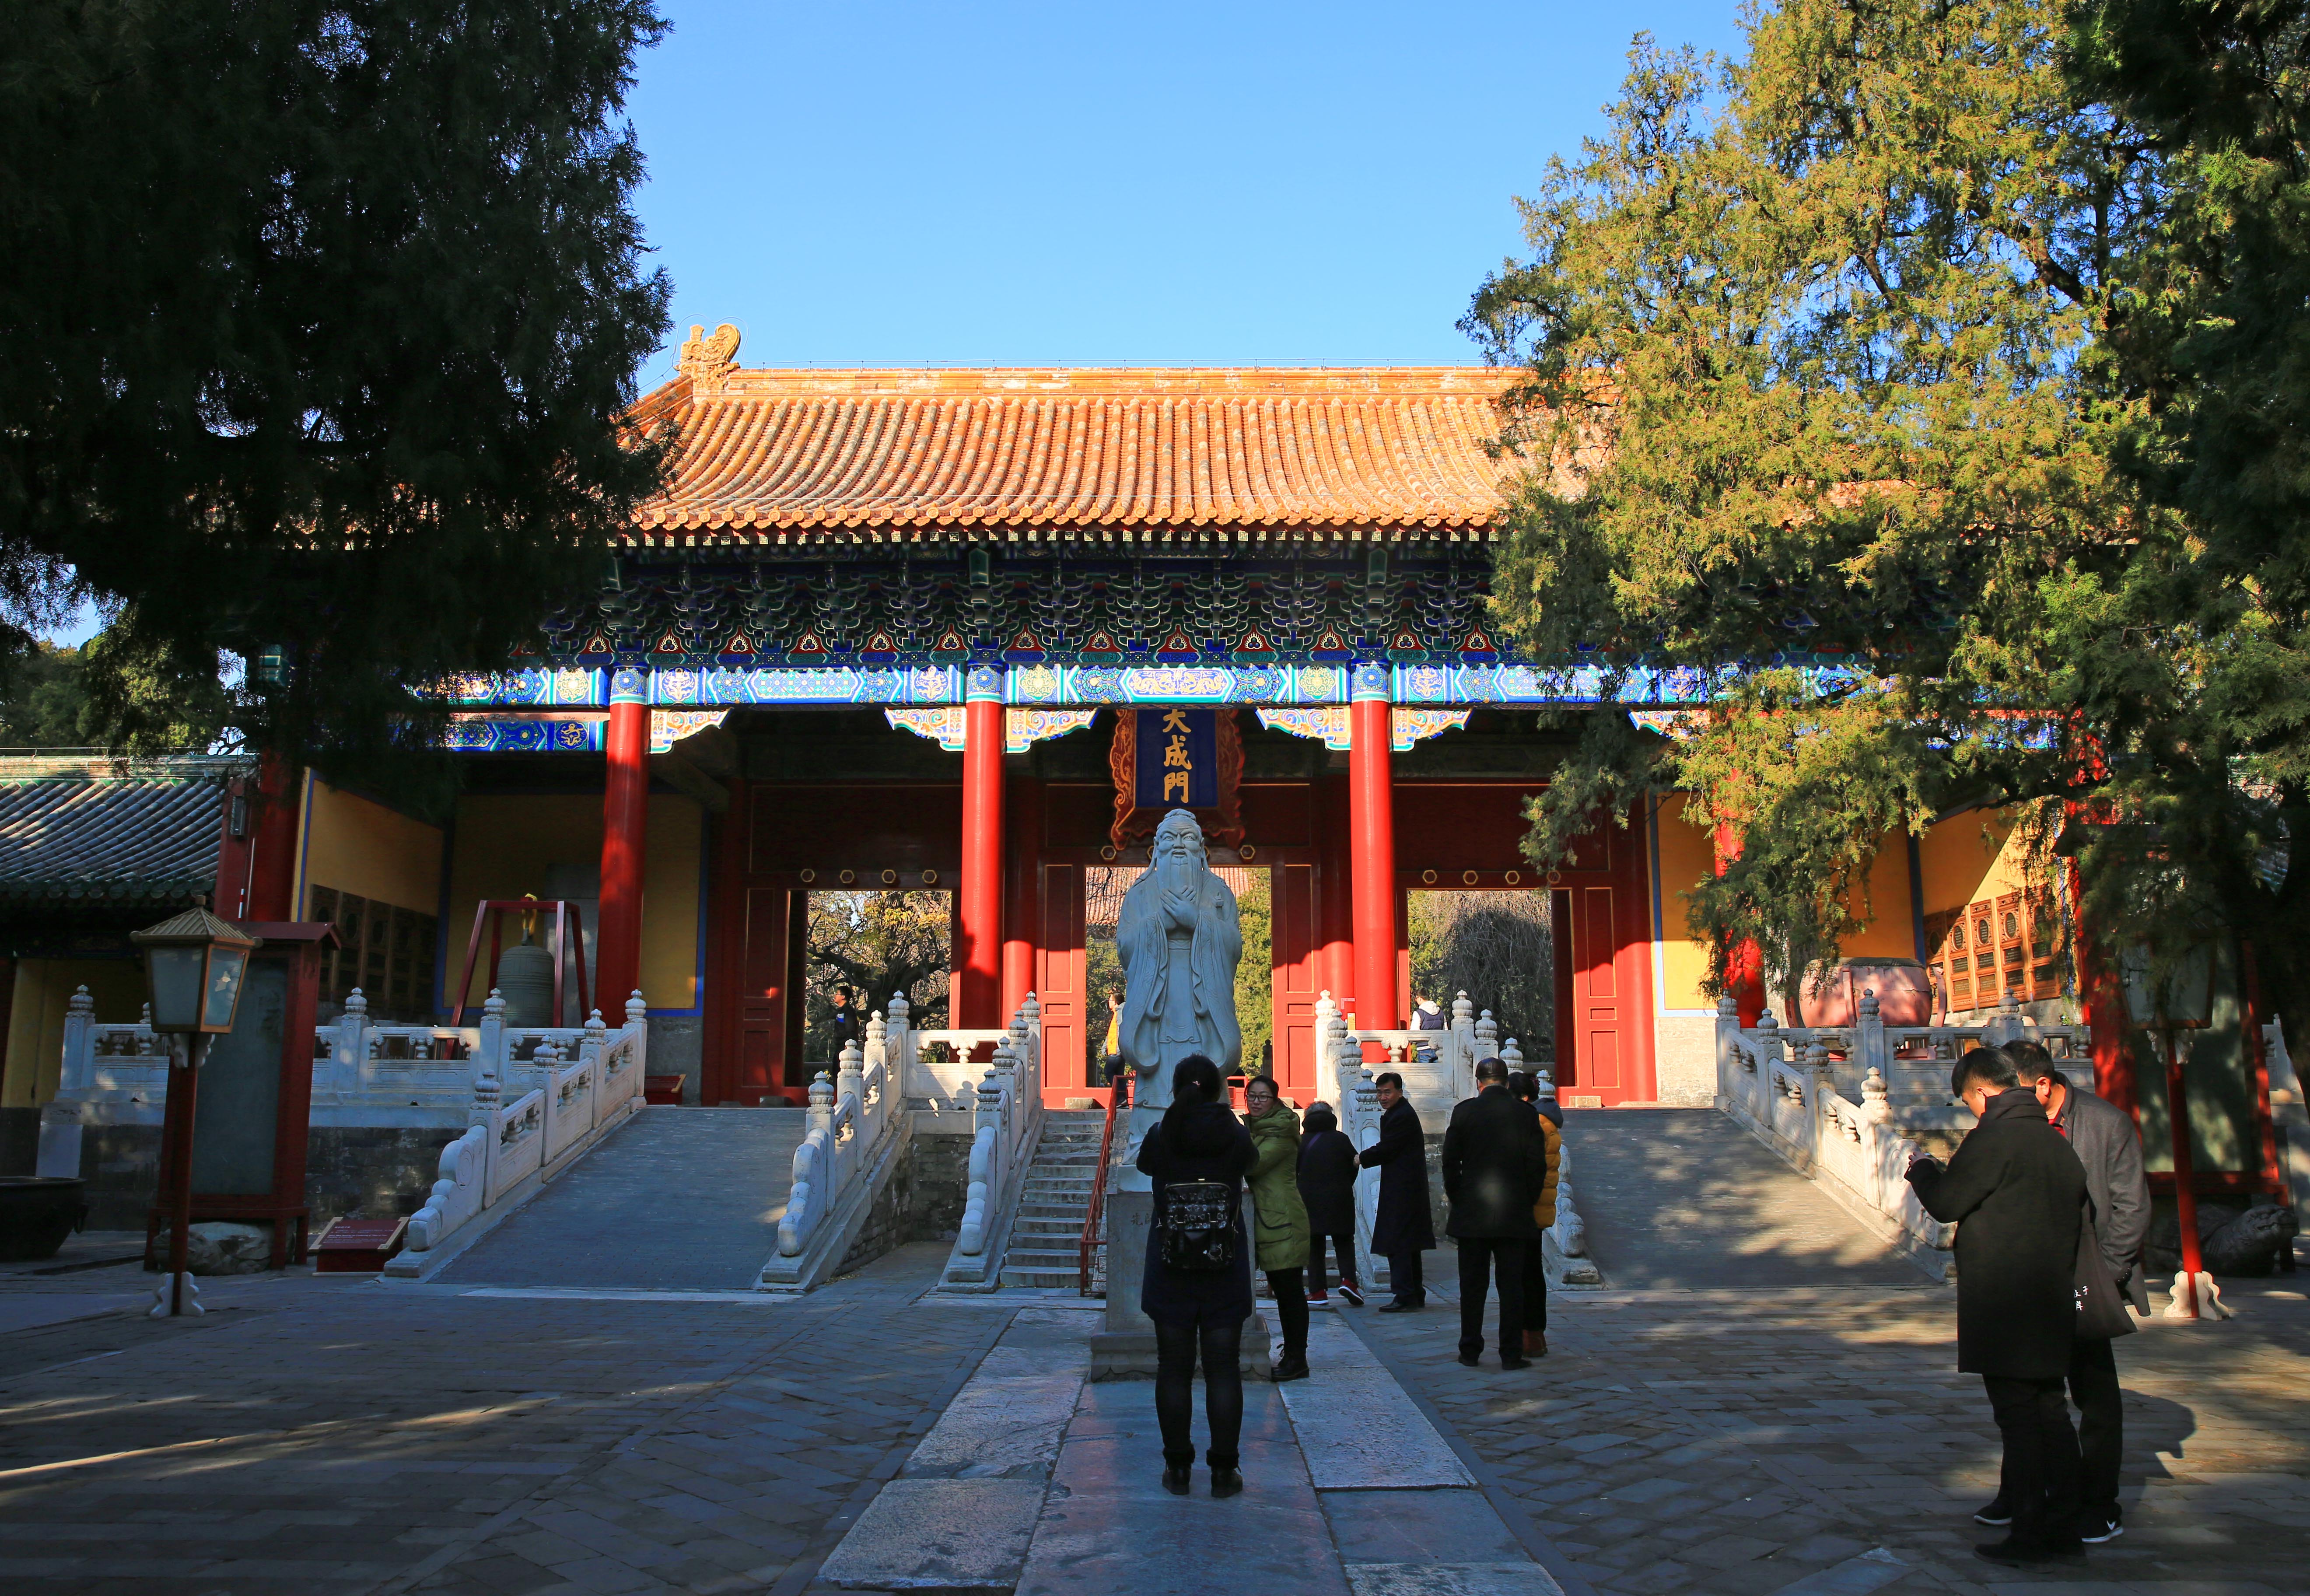 明清北京三大皇家庙宇之孔庙